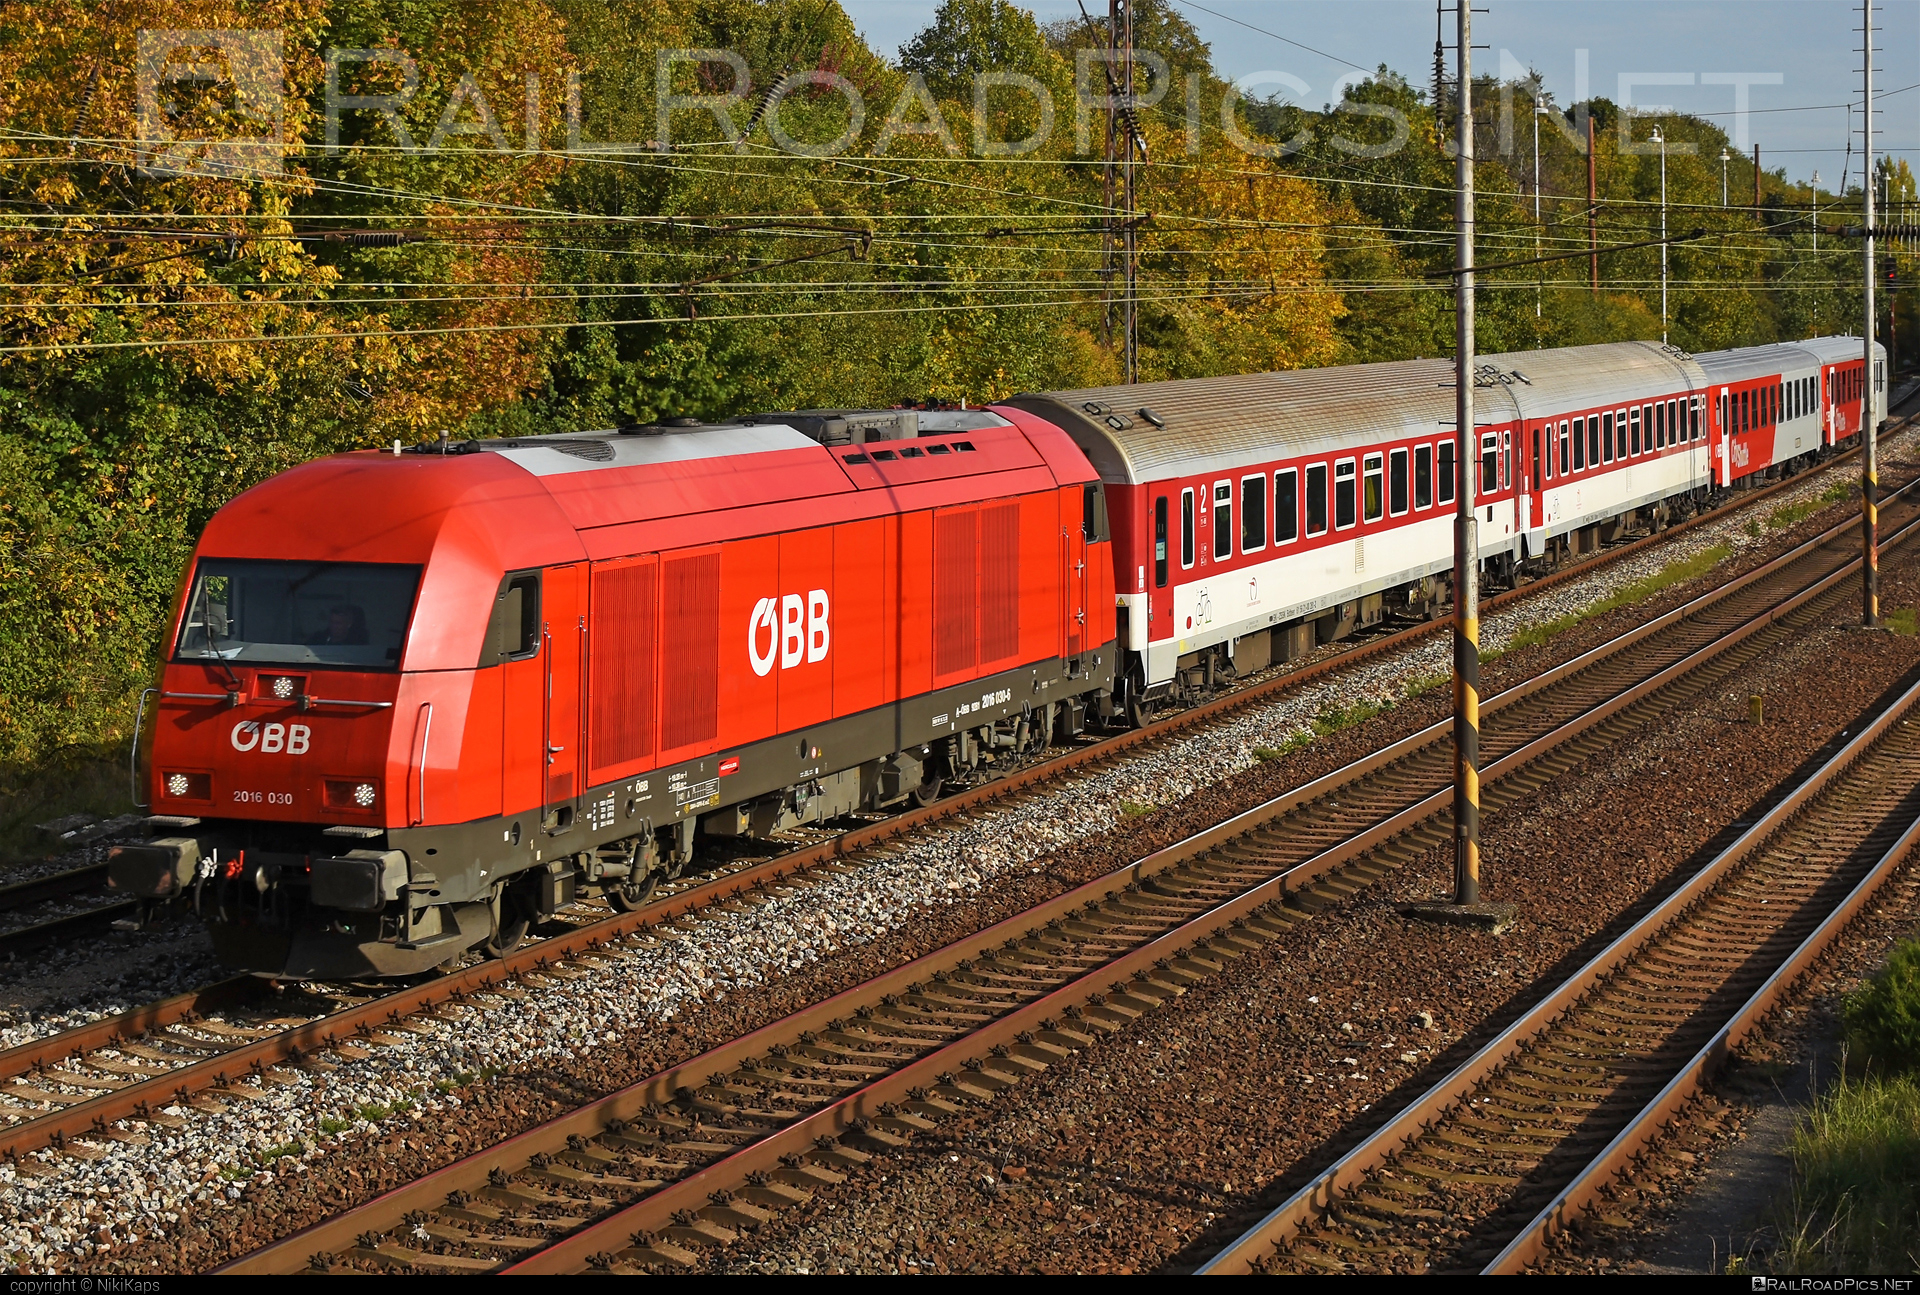 Siemens ER20 - 2016 030 operated by Österreichische Bundesbahnen #er20 #er20hercules #eurorunner #obb #osterreichischebundesbahnen #siemens #siemenser20 #siemenser20hercules #siemenseurorunner #siemenshercules